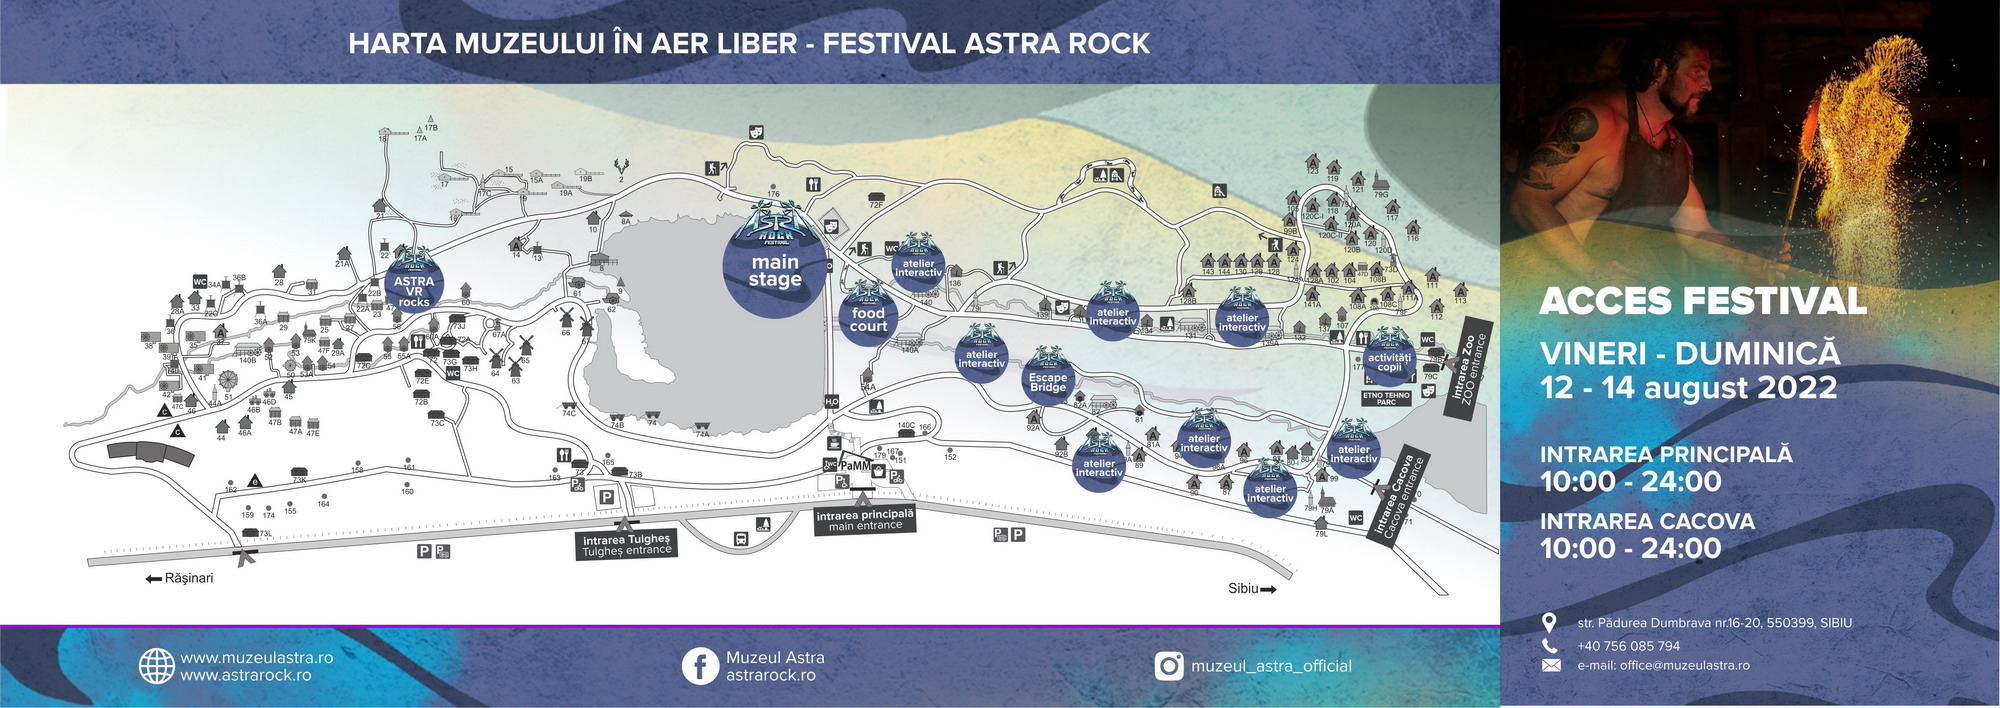 Harta festivalului